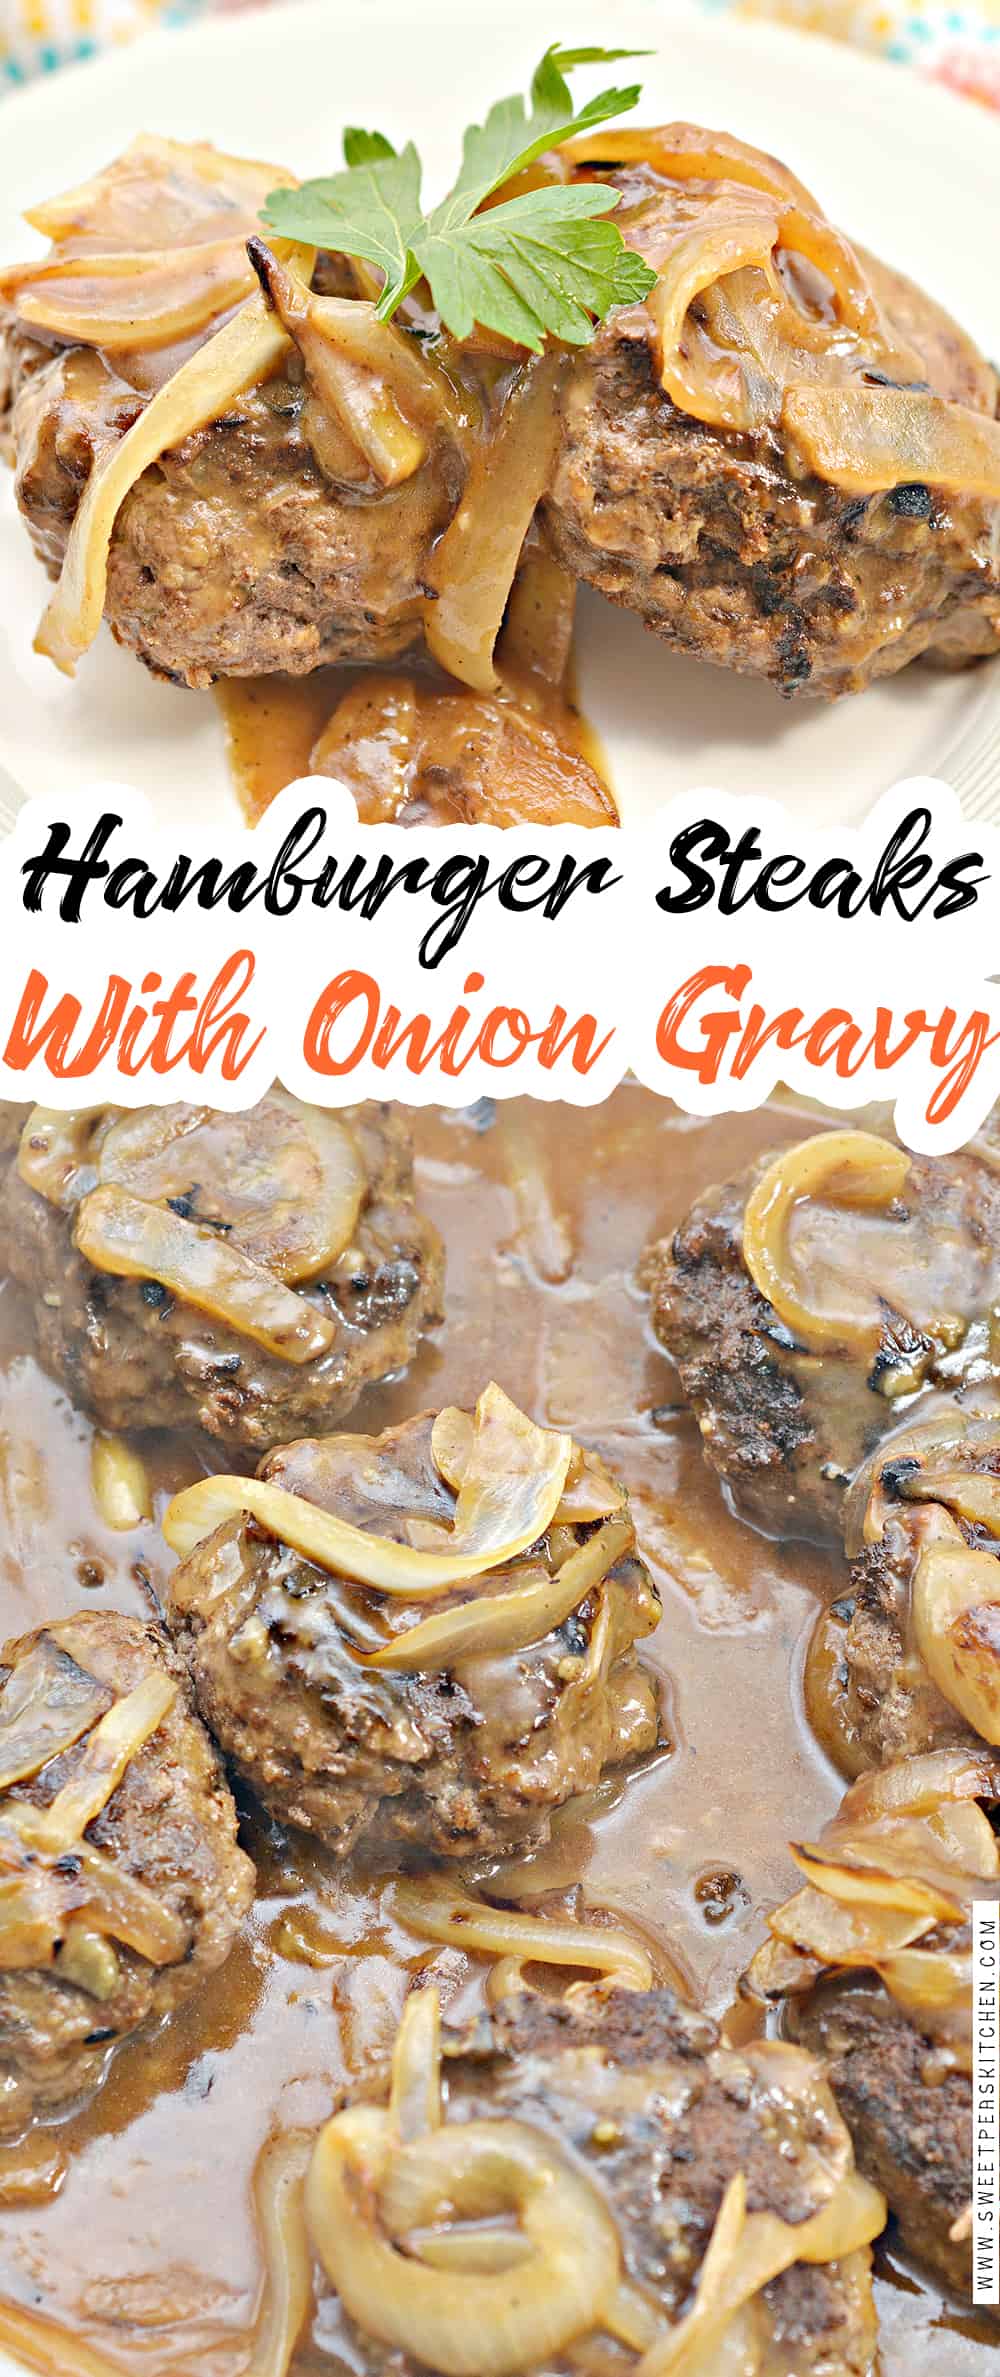 Hamburger Steaks with Onion Gravy